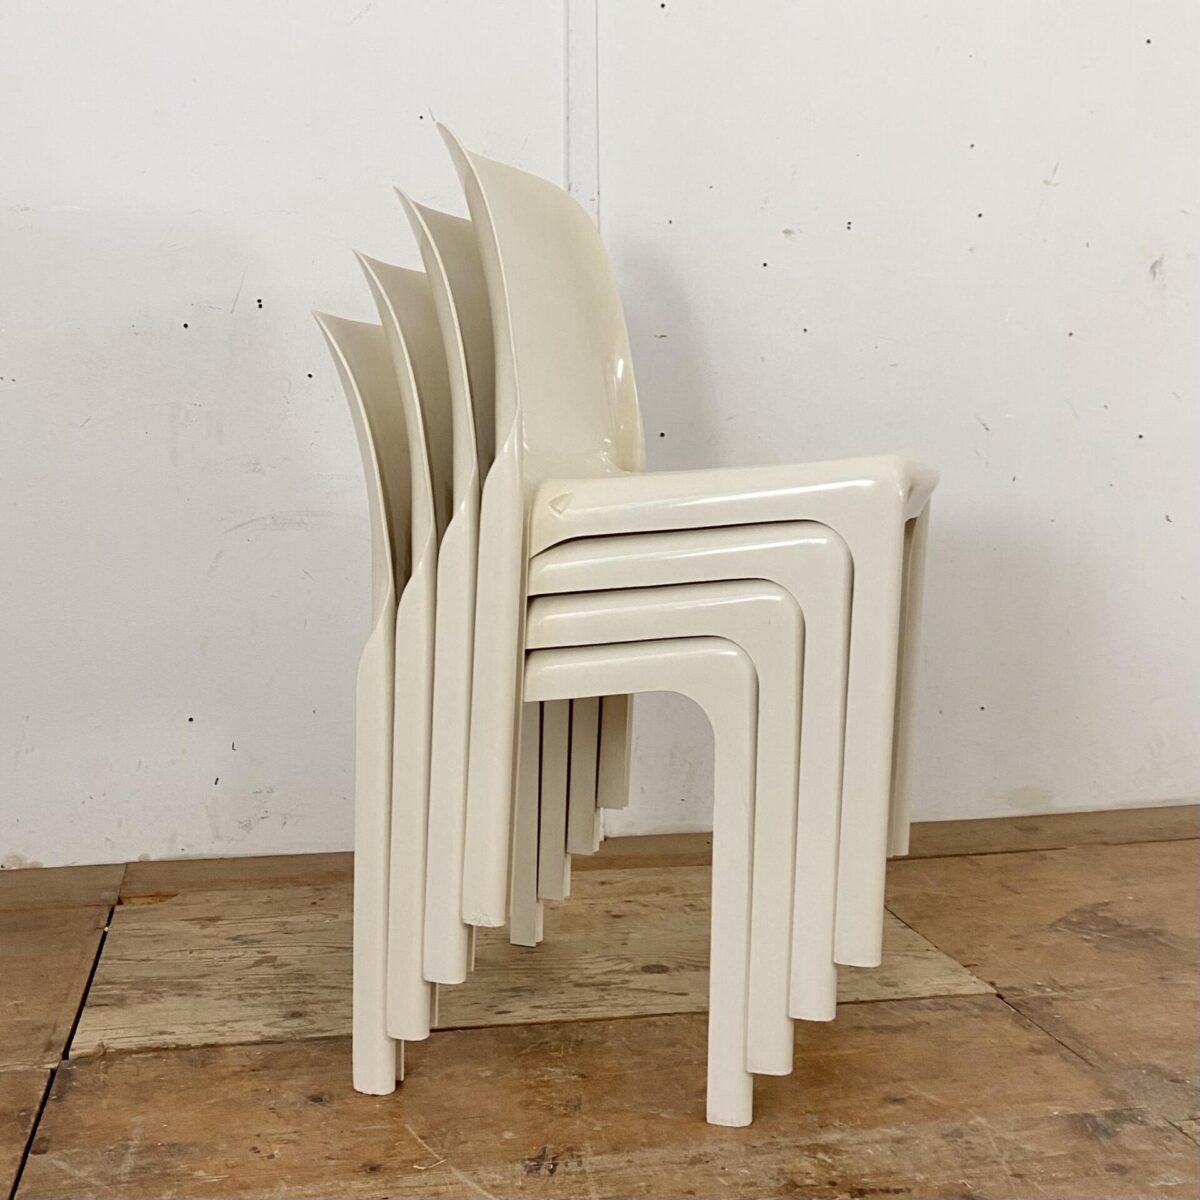 Deuxieme.shop 4er Set Selene Stühle von Vico Magistretti. Hergestellt von Artemide in den 60er Jahren. space age design made in italy.